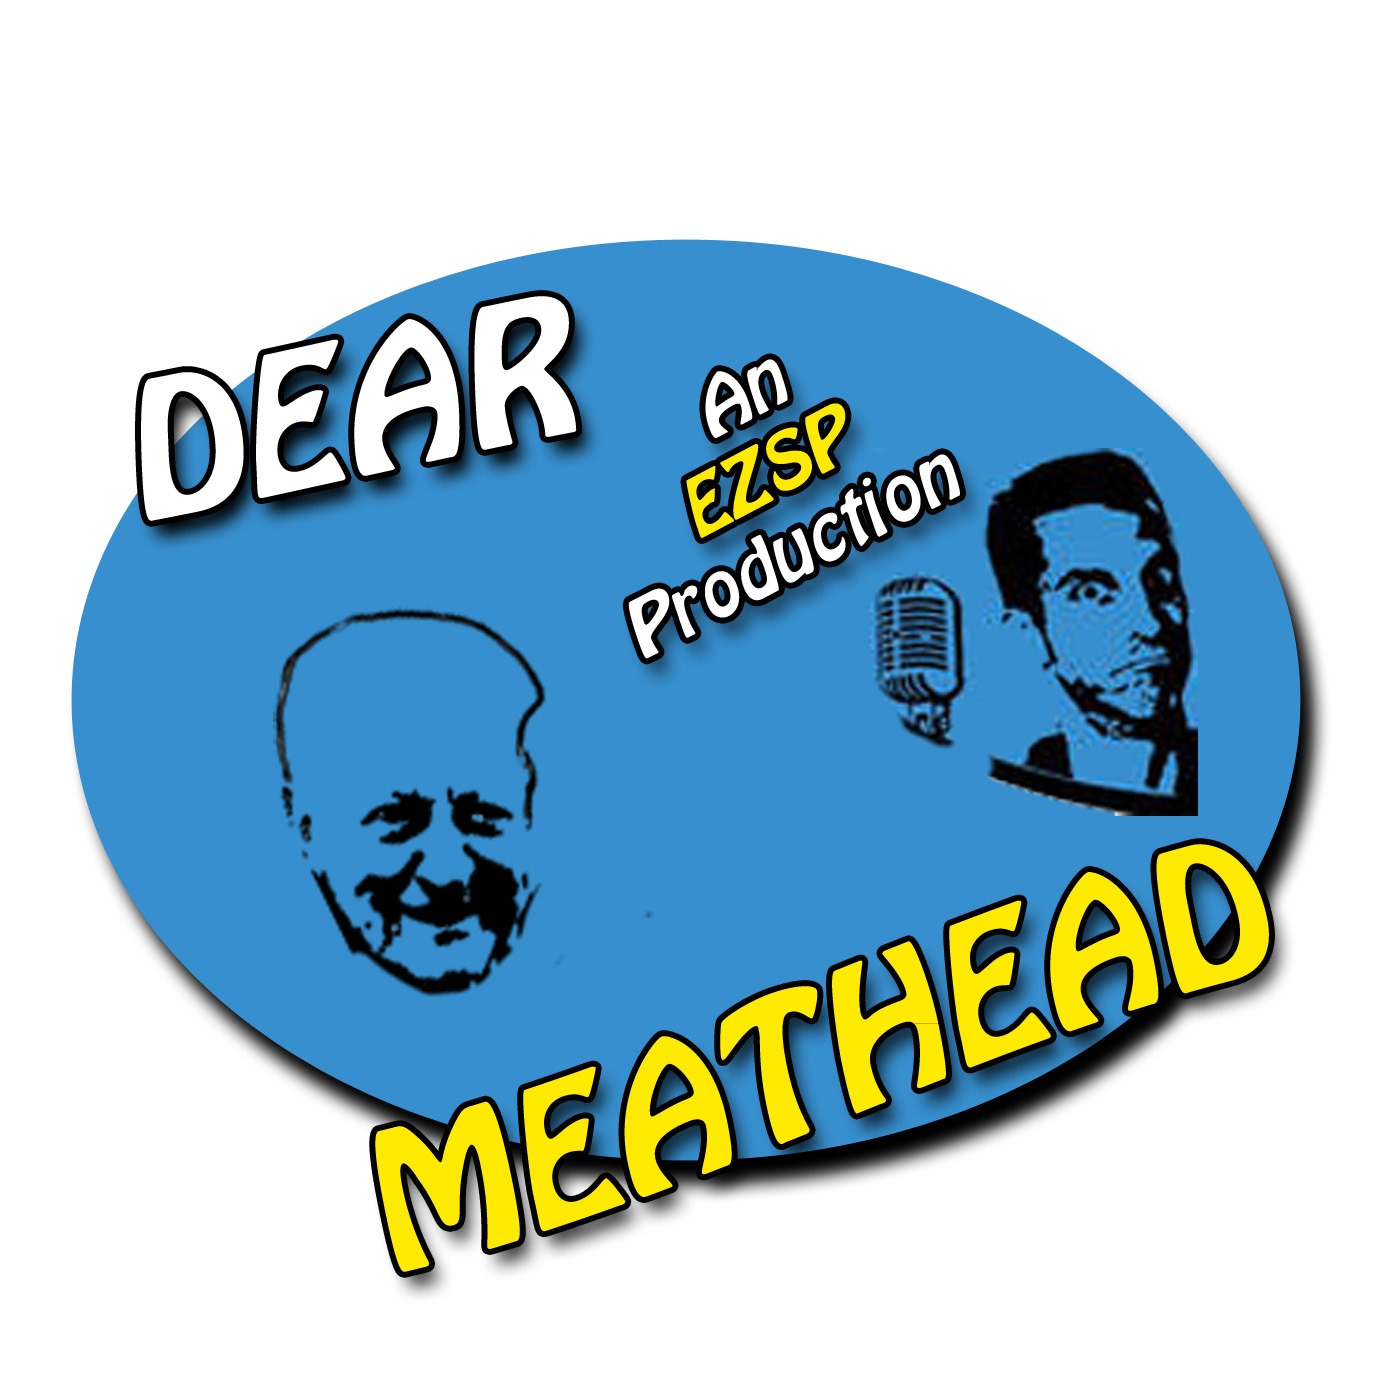 Dear Meathead Highlight 5/3 - Dental advice from Dad